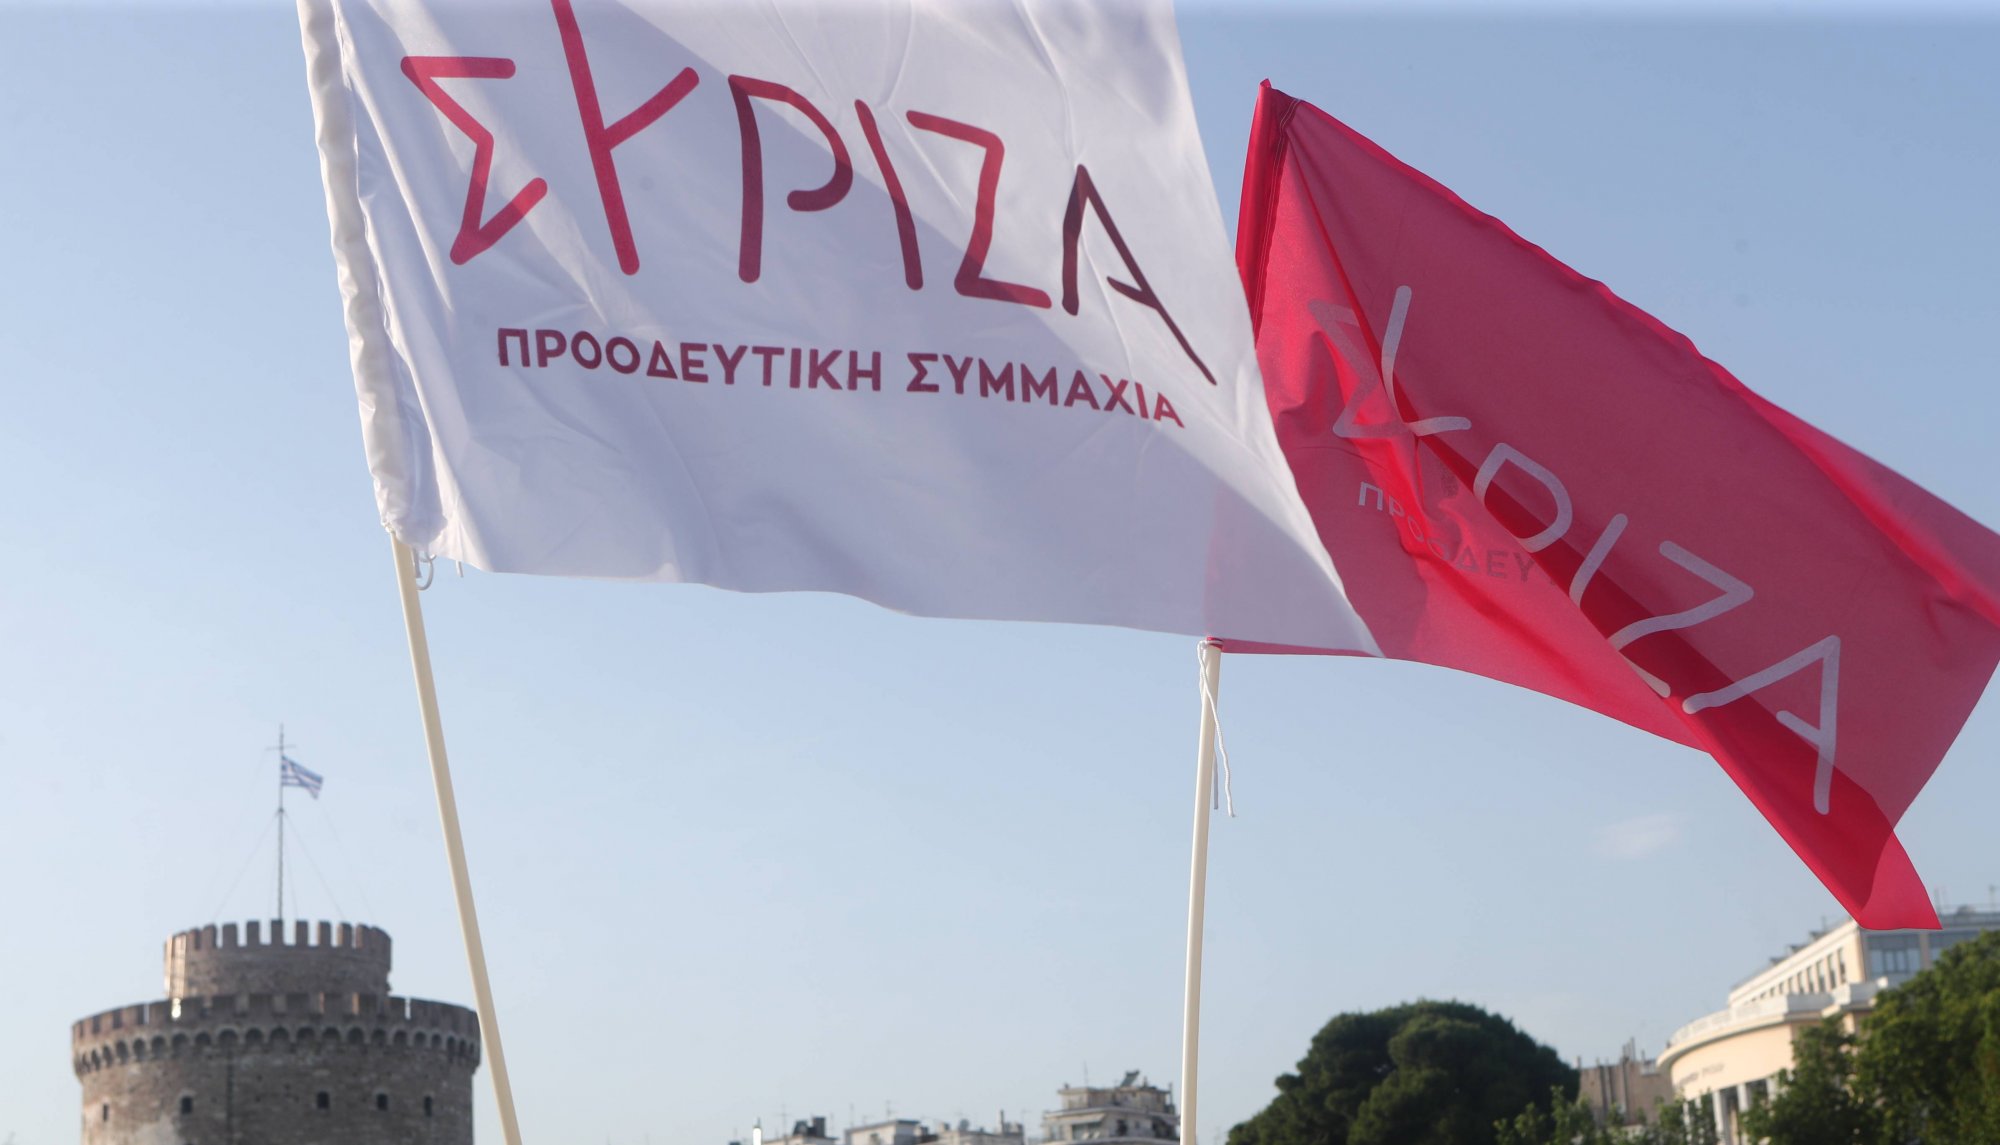 Στην αντεπίθεση ο ΣΥΡΙΖΑ: Ο Κυριάκος Μητσοτάκης και η ΝΔ πήγαν για μαλλί και βγήκαν κουρεμένοι